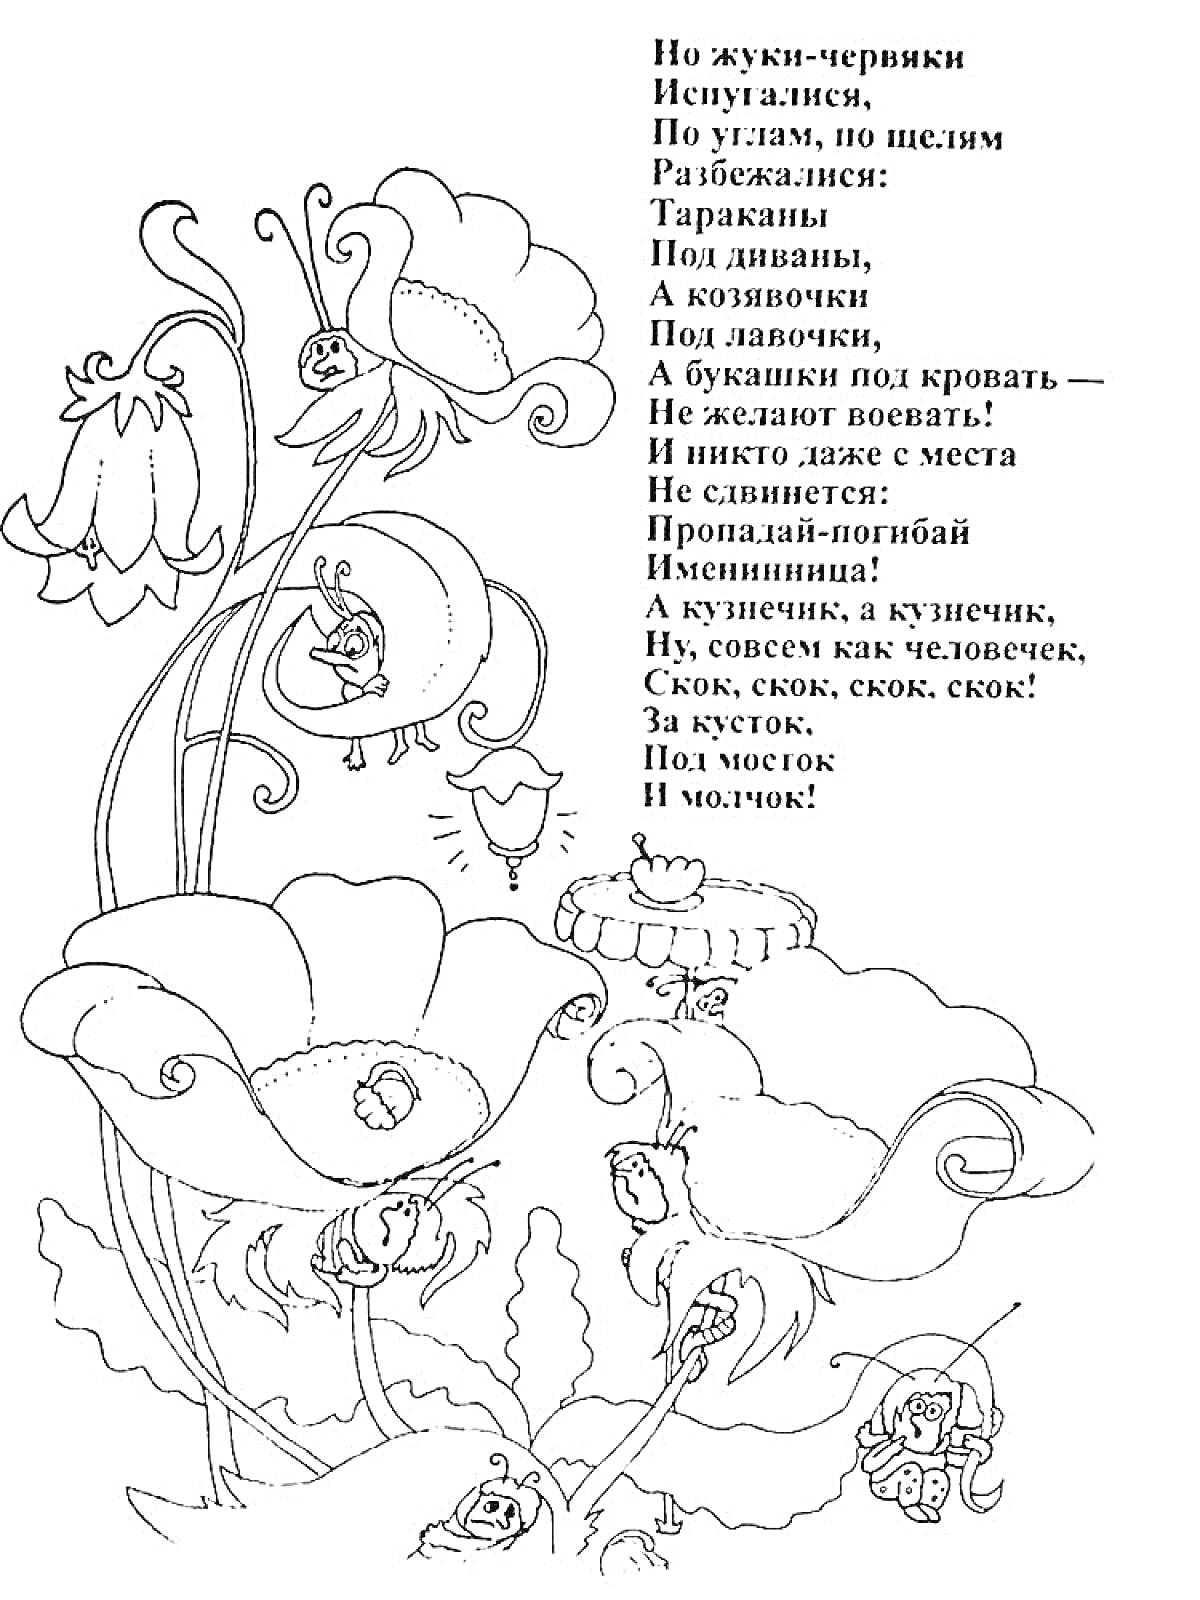 На раскраске изображено: Муха, Цокотуха, Жуки, Букашки, Цветы, Стихотворение